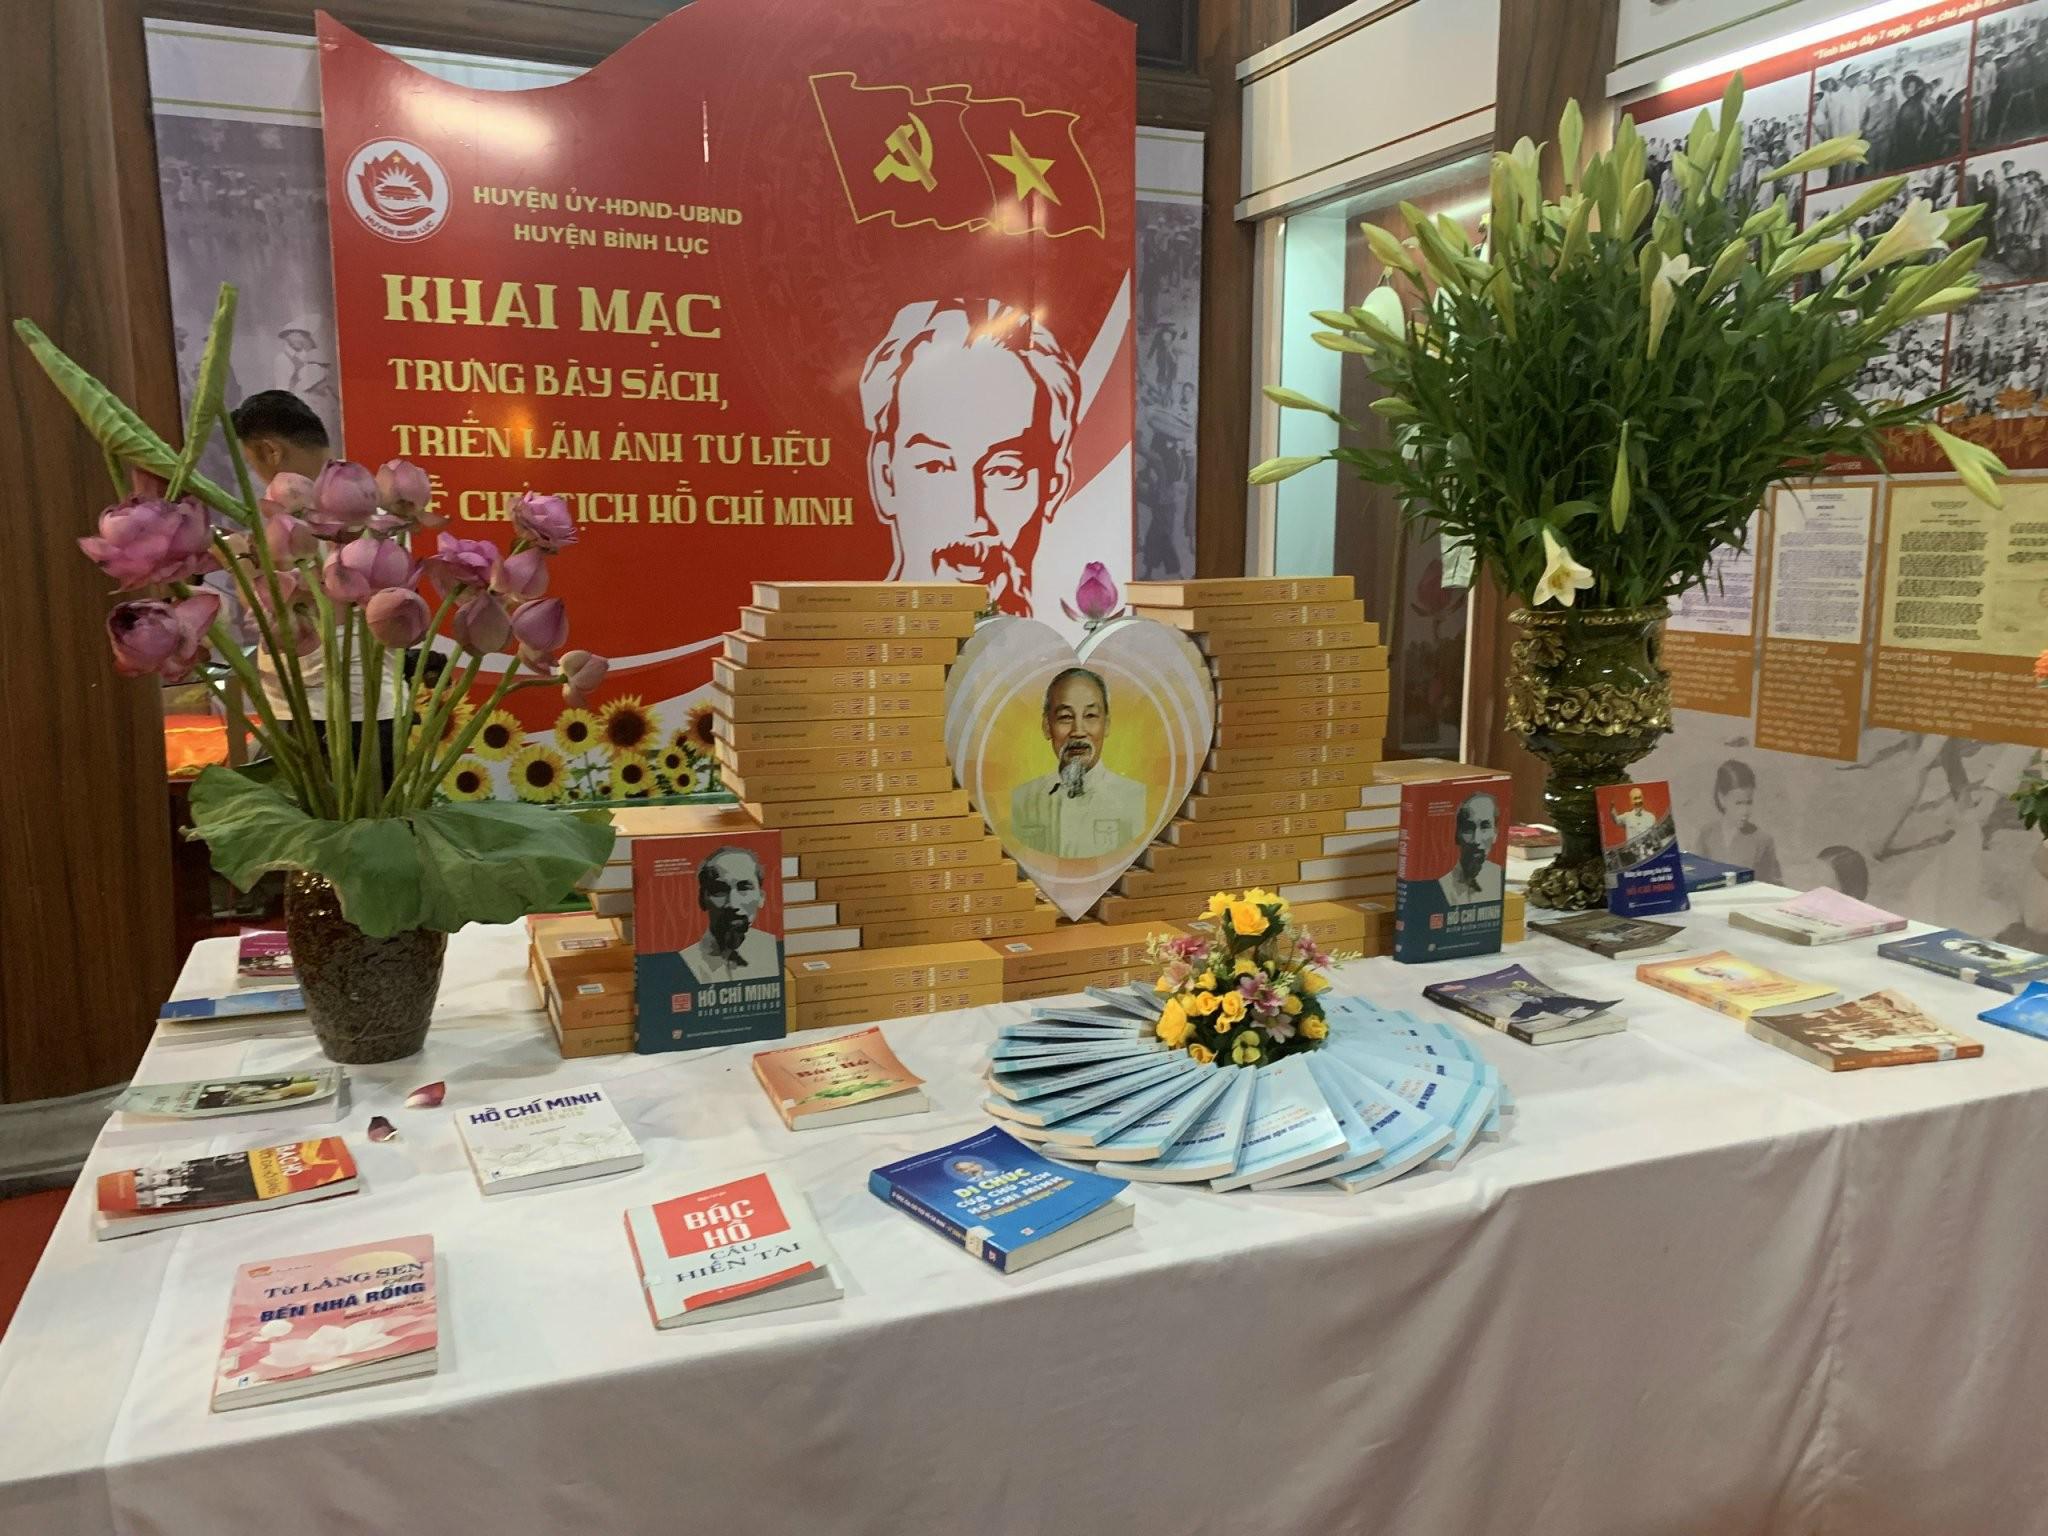 Khai mạc Trưng bày sách, tư liệu về Chủ tịch Hồ Chí Minh tại Khu lưu niệm Cát Tường - 1